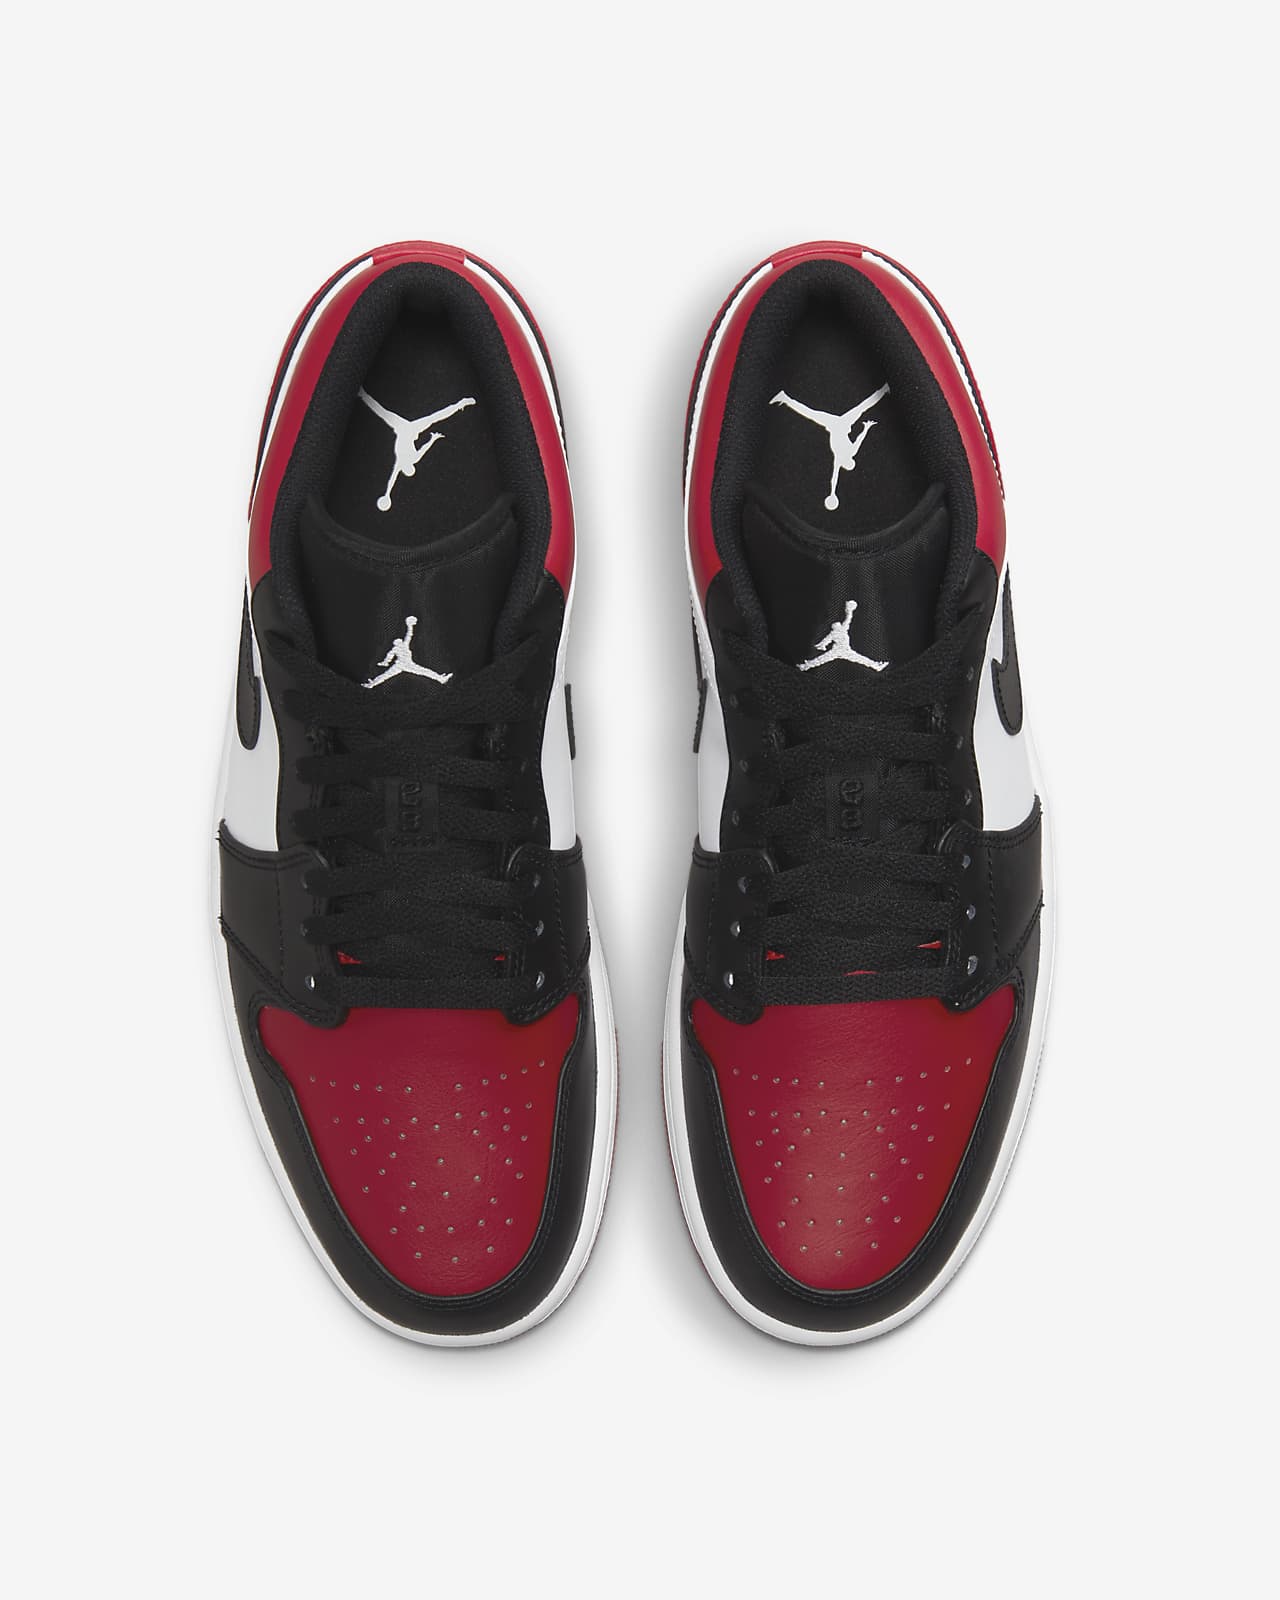 Air Jordan 1 Nike.com